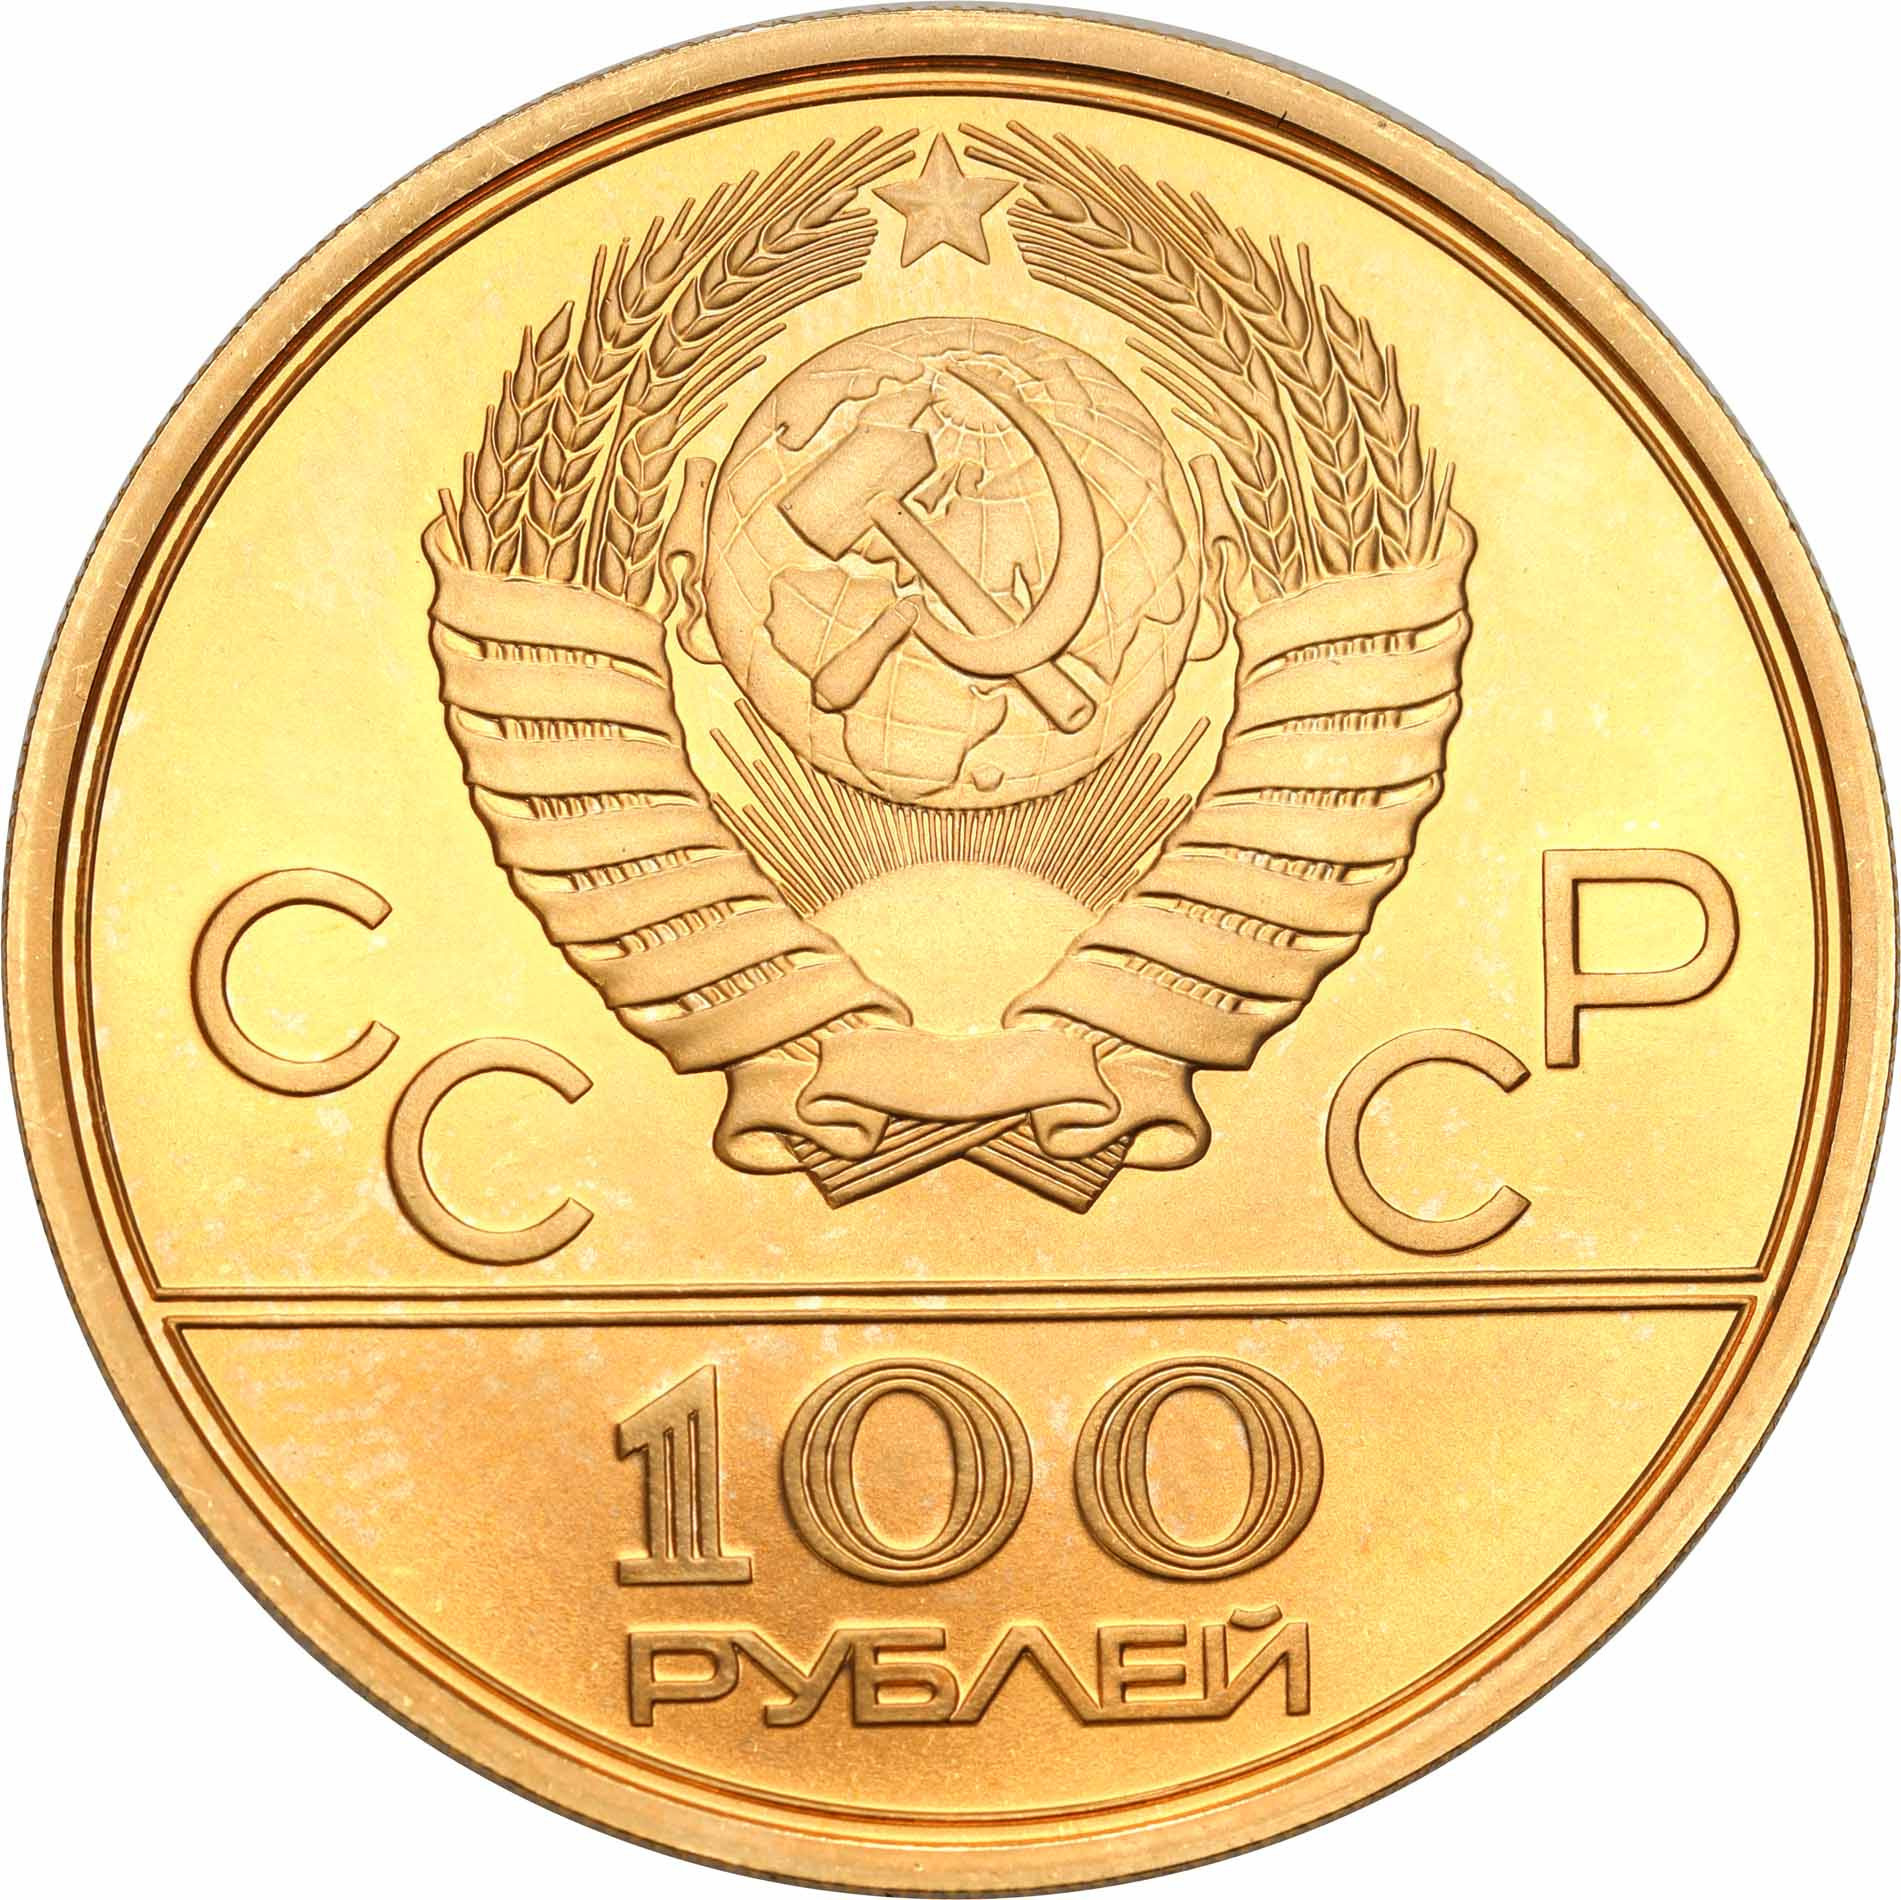 Rosja 100 Rubli 1980 Olimpiada Moskwa ZNICZ najrzadsza - 1/2 uncji złota